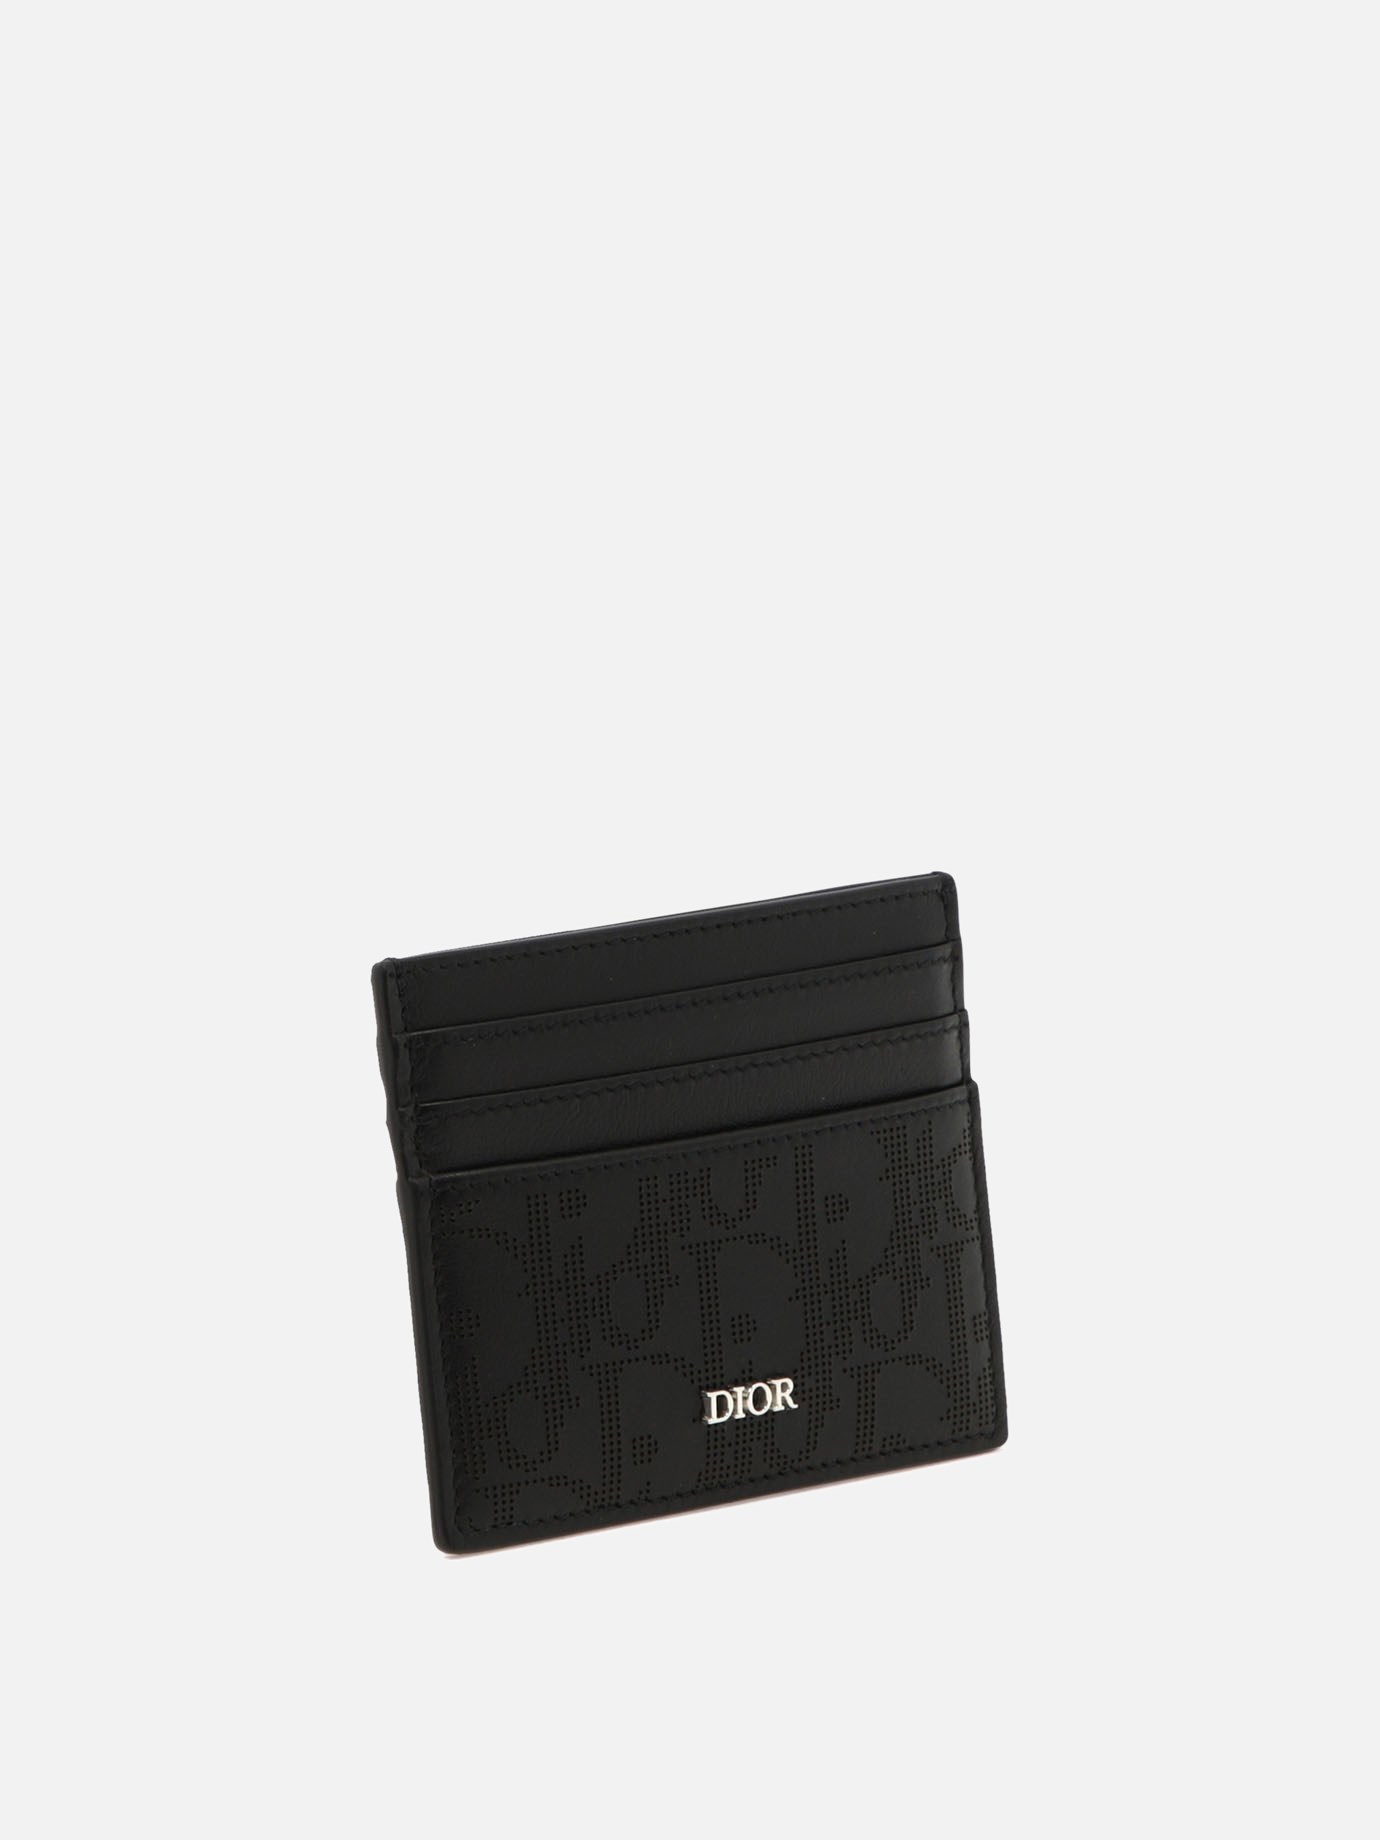  Dior Oblique Galaxy  card holder by Dior